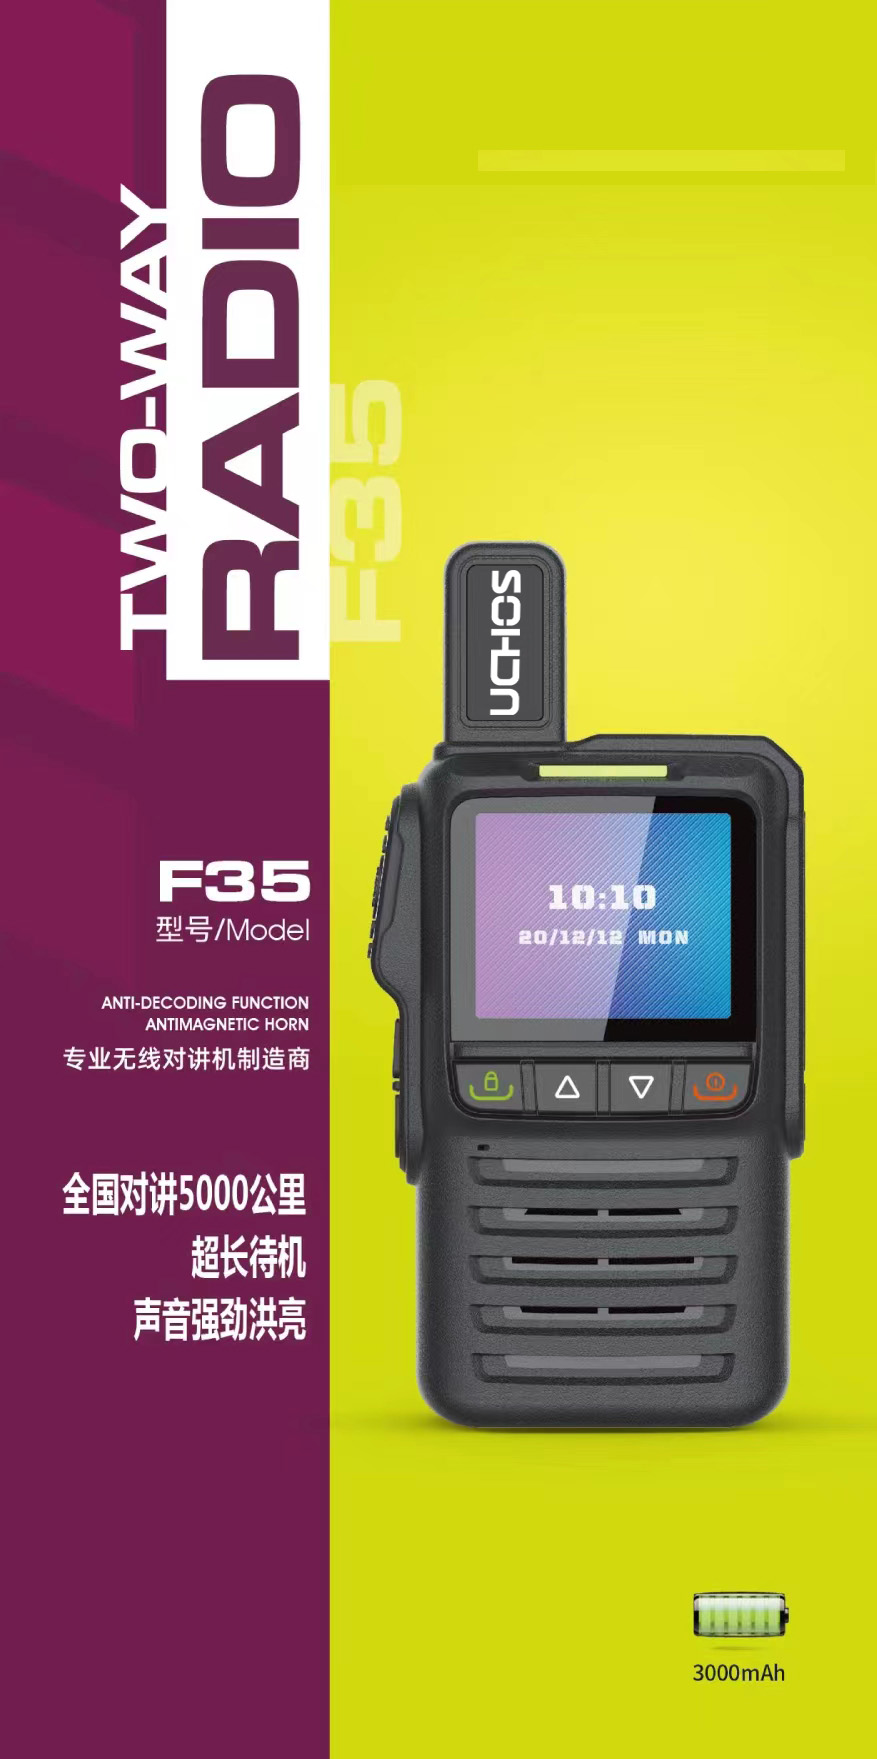 扬州市 | F35型公网集群对讲机